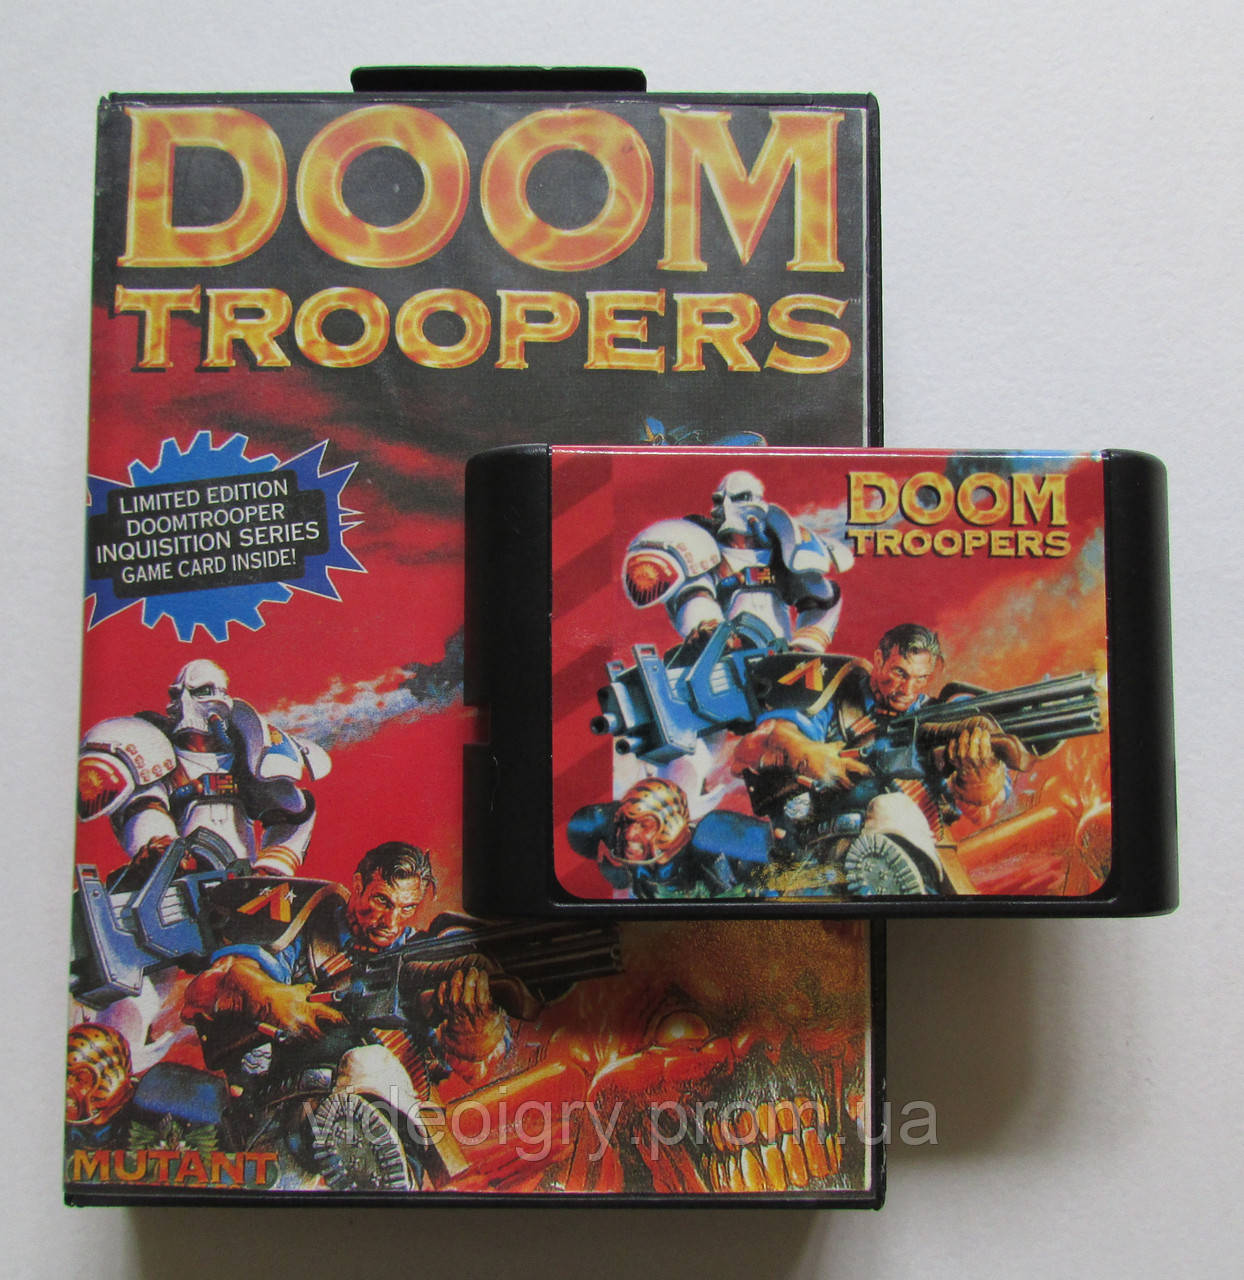 Doom troopers sega. Doom Troopers Sega картридж. Doom Troopers Mega Drive картридж. Картридж для сеги дум.